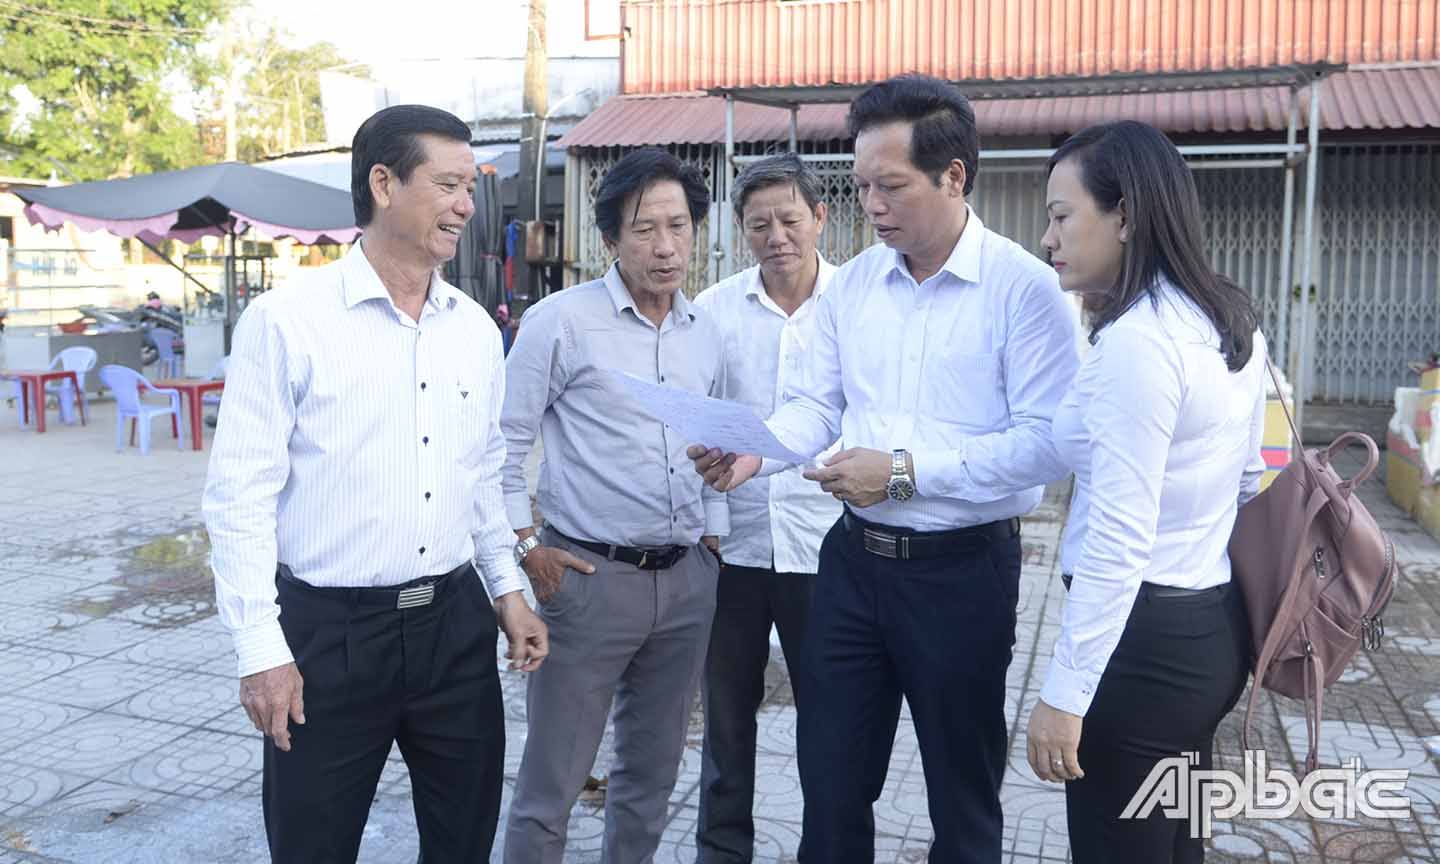 Đồng chí Nguyễn Thành Diệu khảo sát địa điểm xuất phát cự ly 5 km (thị trấn Mỹ Phước, huyện Tân Phước).